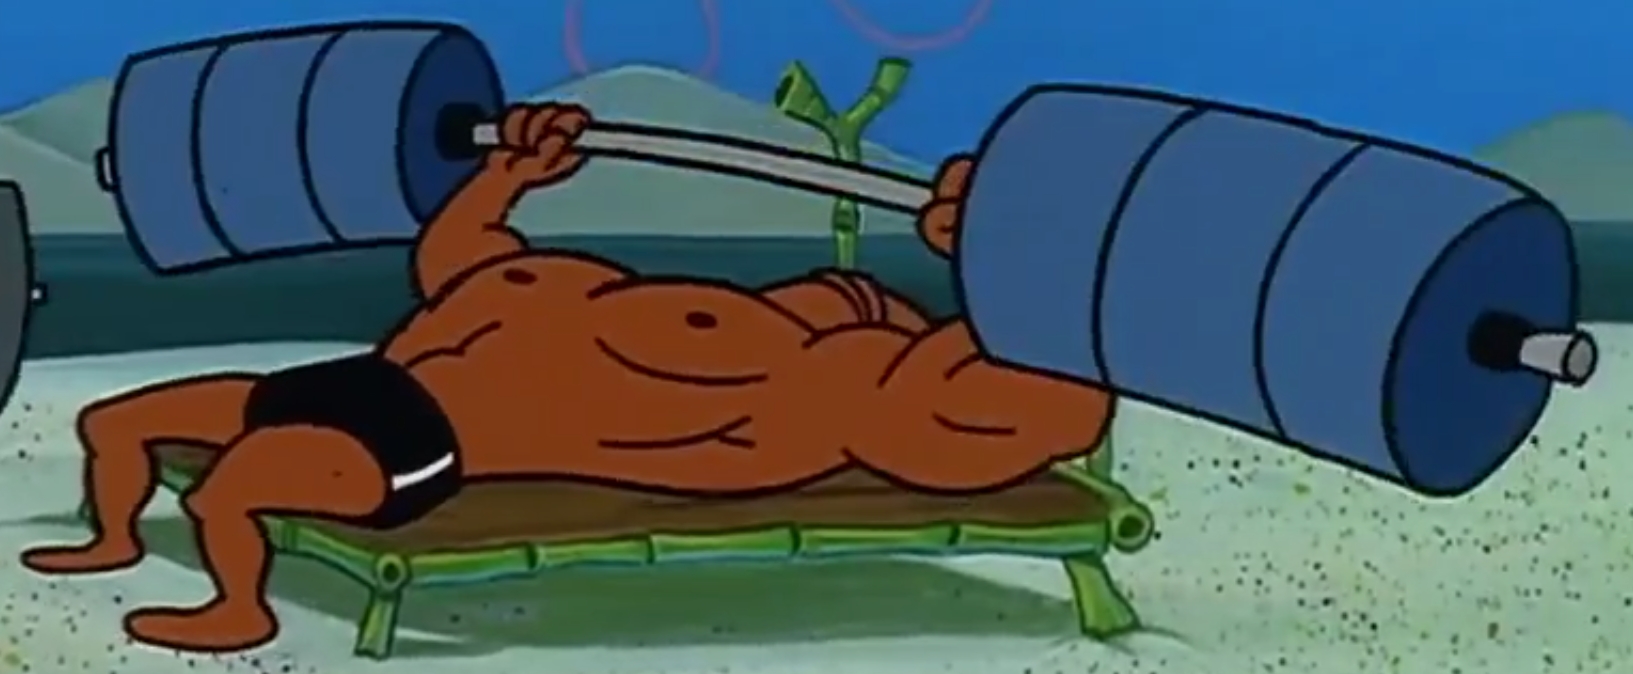 Spongebob bodybuilder